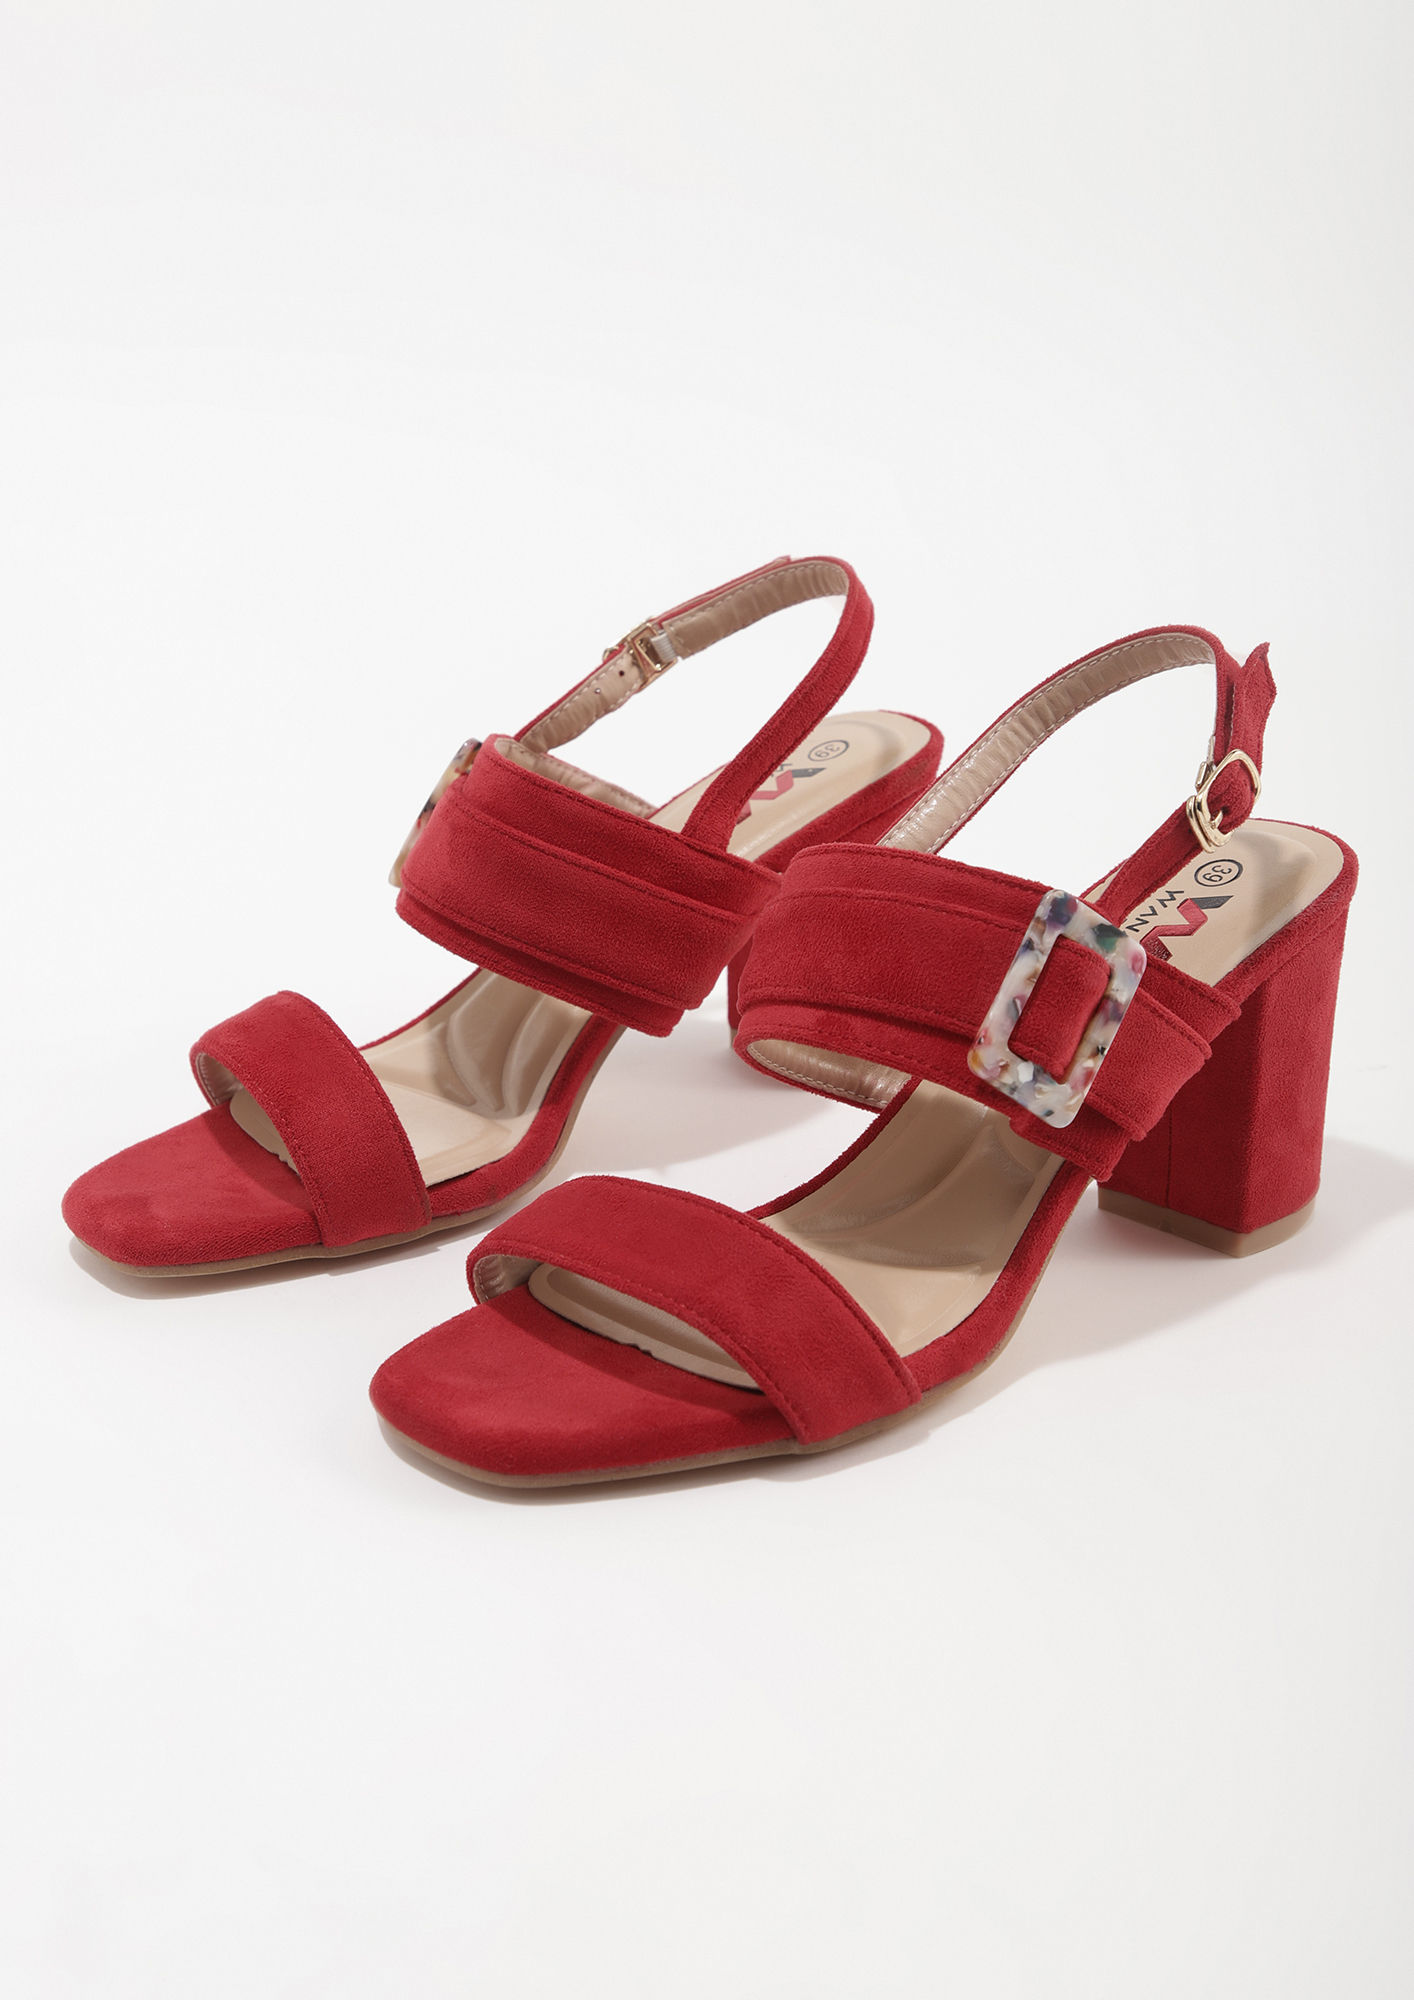 Buy Women Red Casual Sandals Online - 753269 | Allen Solly